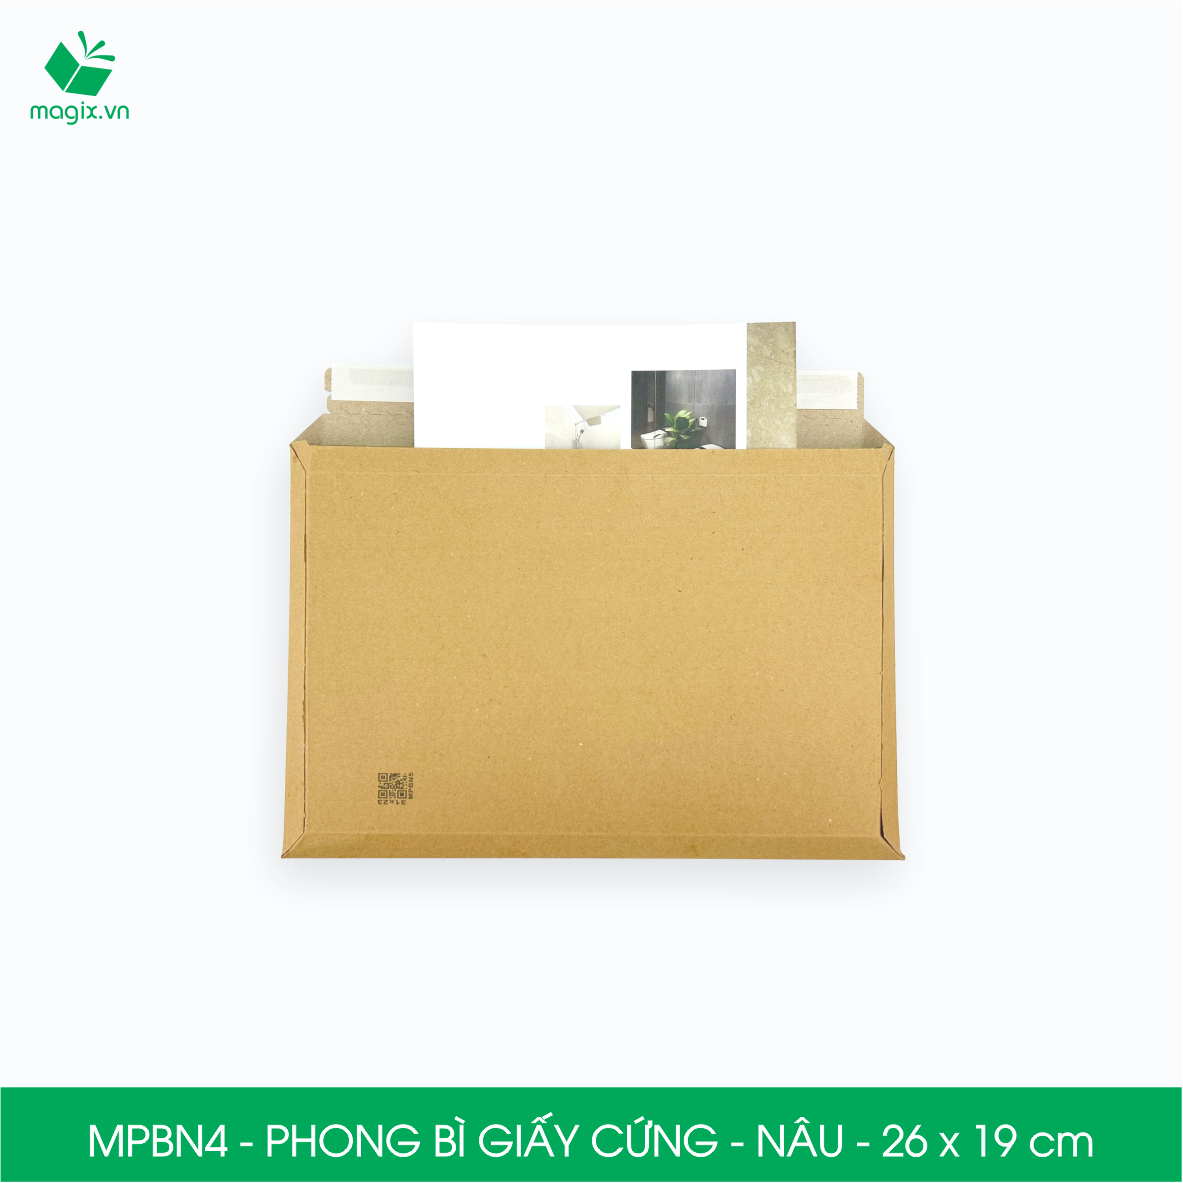 MPBN4 - 26x19 cm - Combo 20 phong bì giấy cứng đóng hàng màu nâu thay thế túi gói hàng